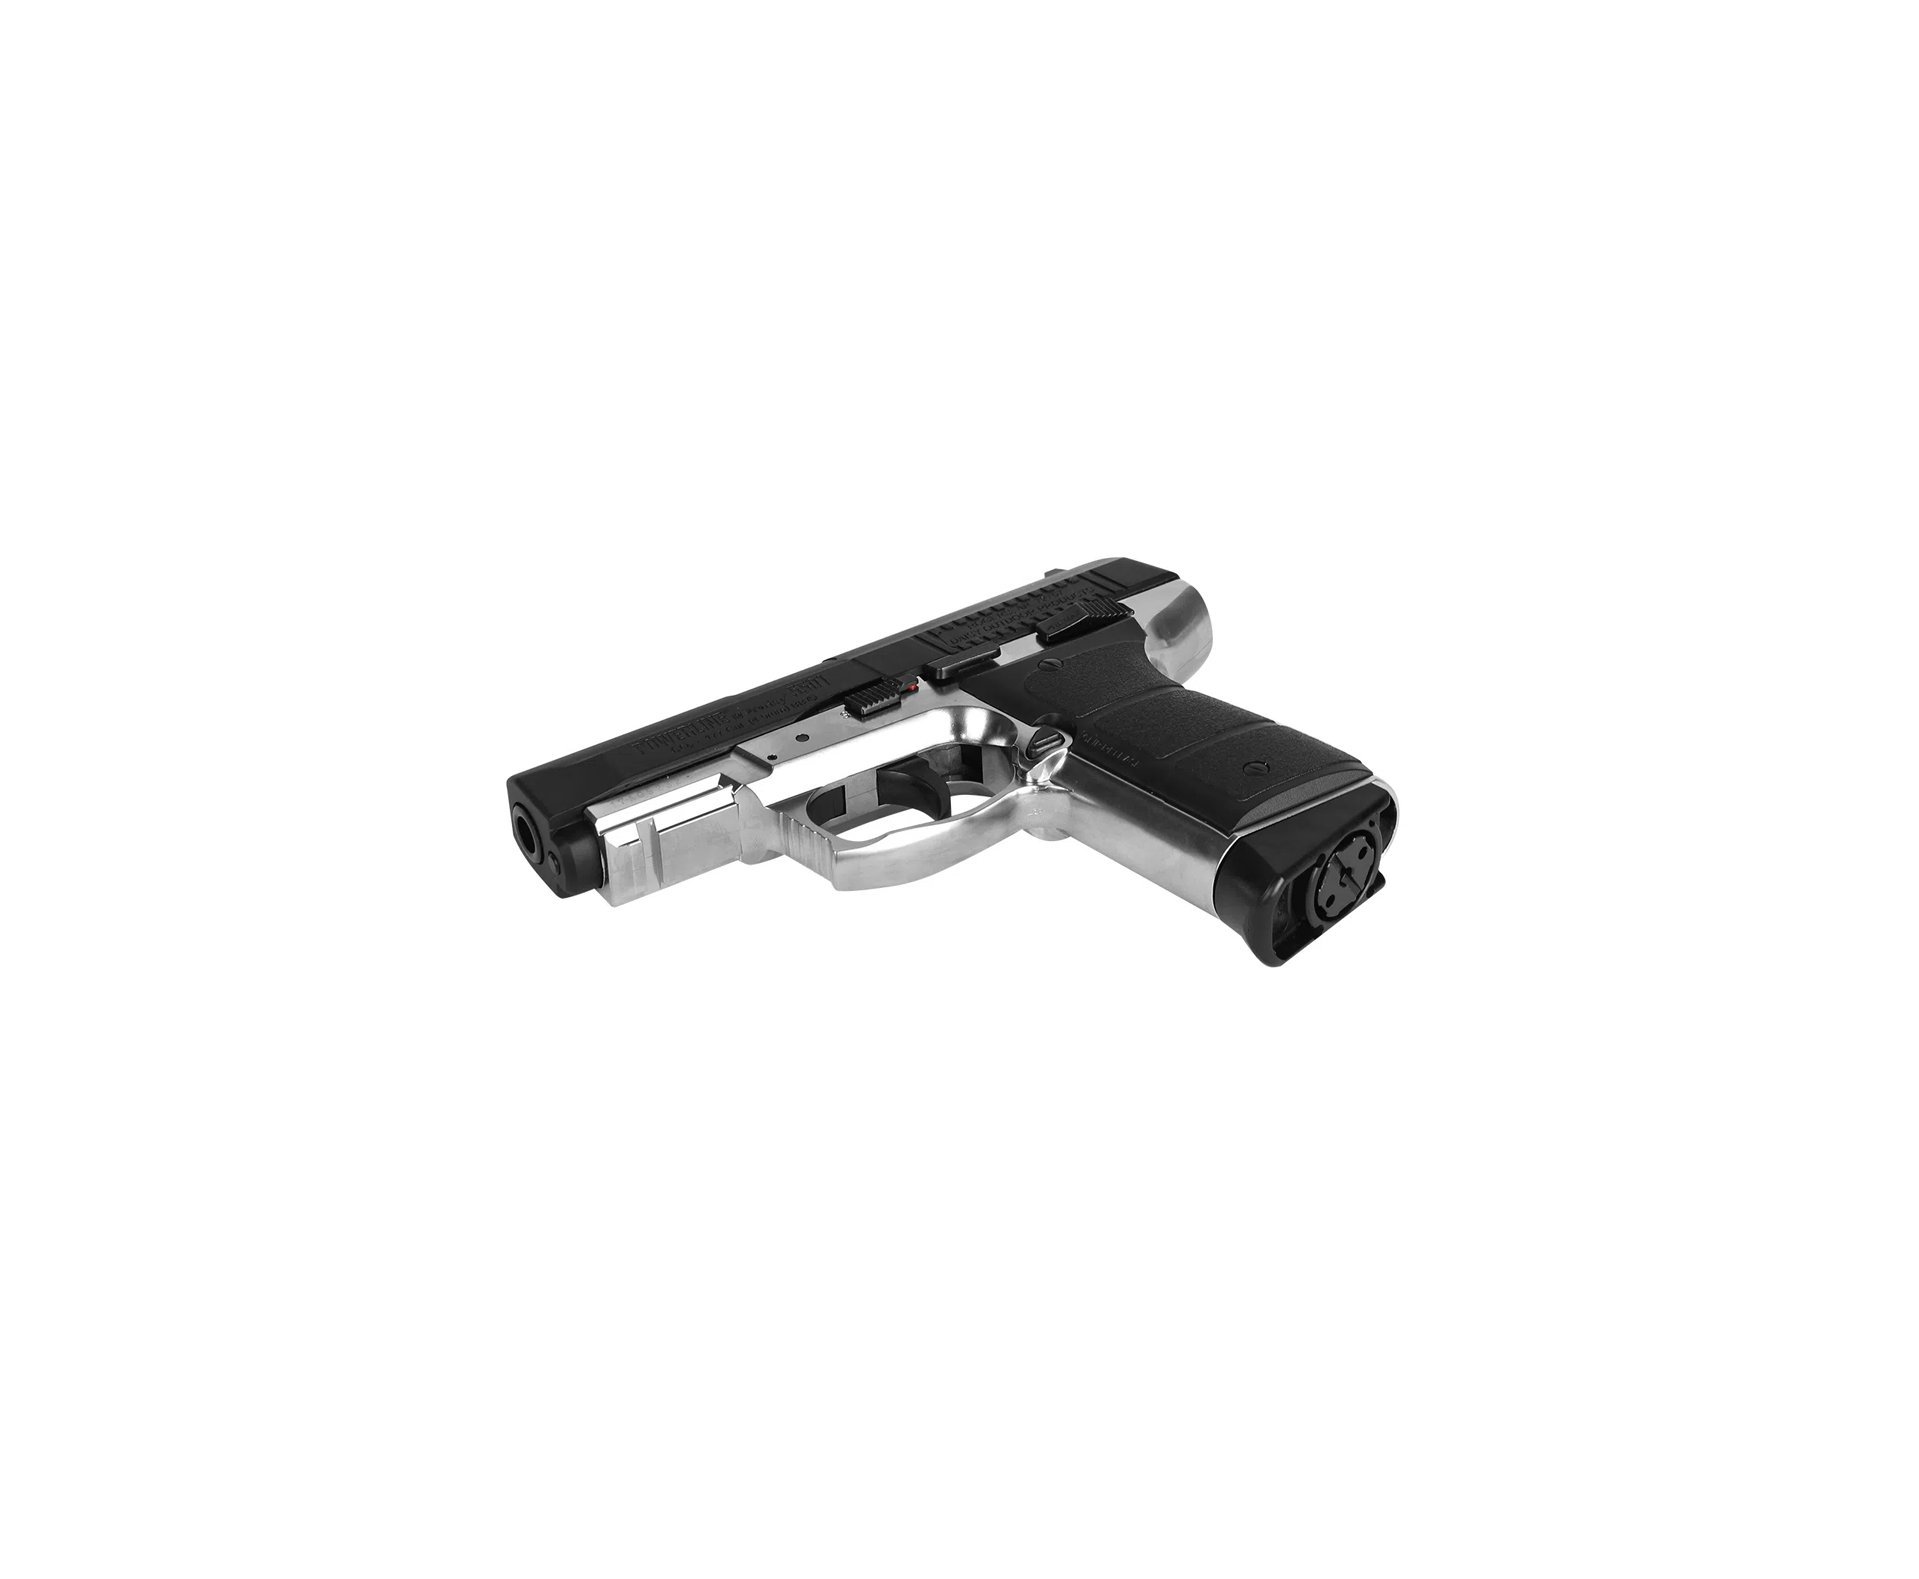 Pistola De Pressão Co2 Full Metal Daisy 5501 Powerline Com Blowback 4.5mm 15 Tiros